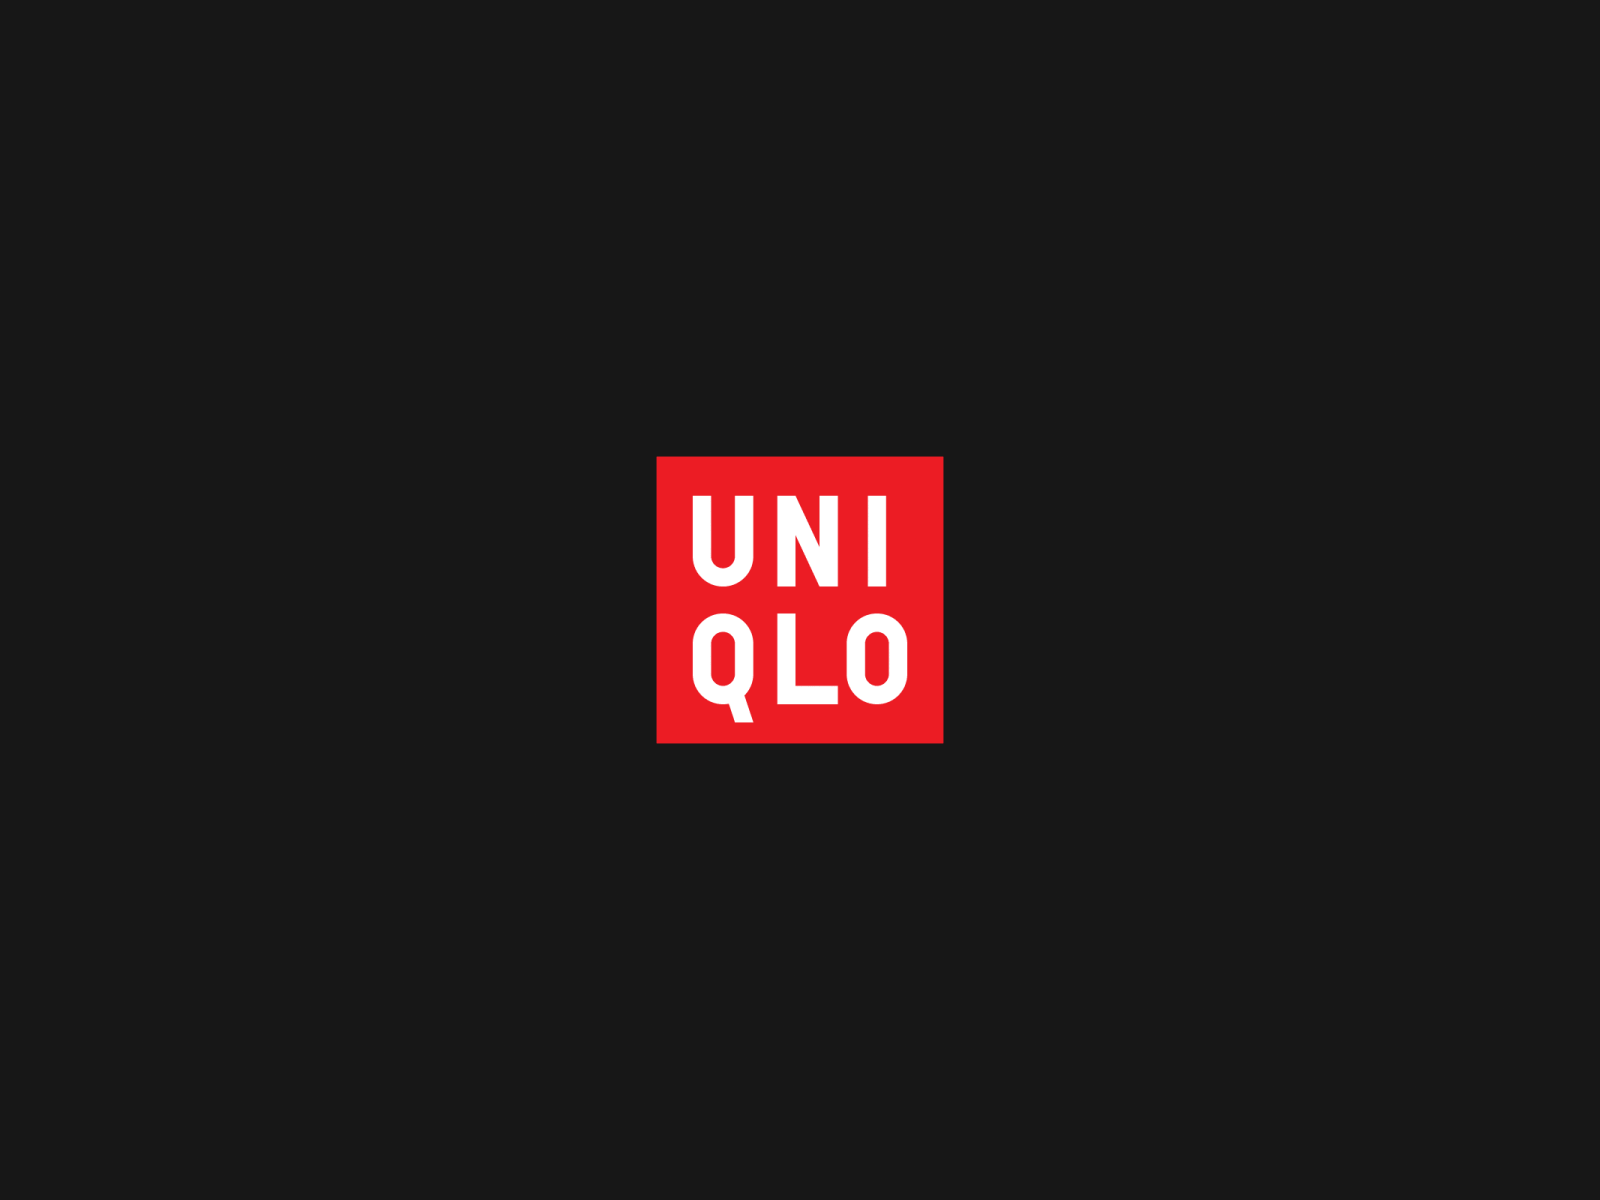 Uniqlo Logo Animation by Mathys. C on Dribbble